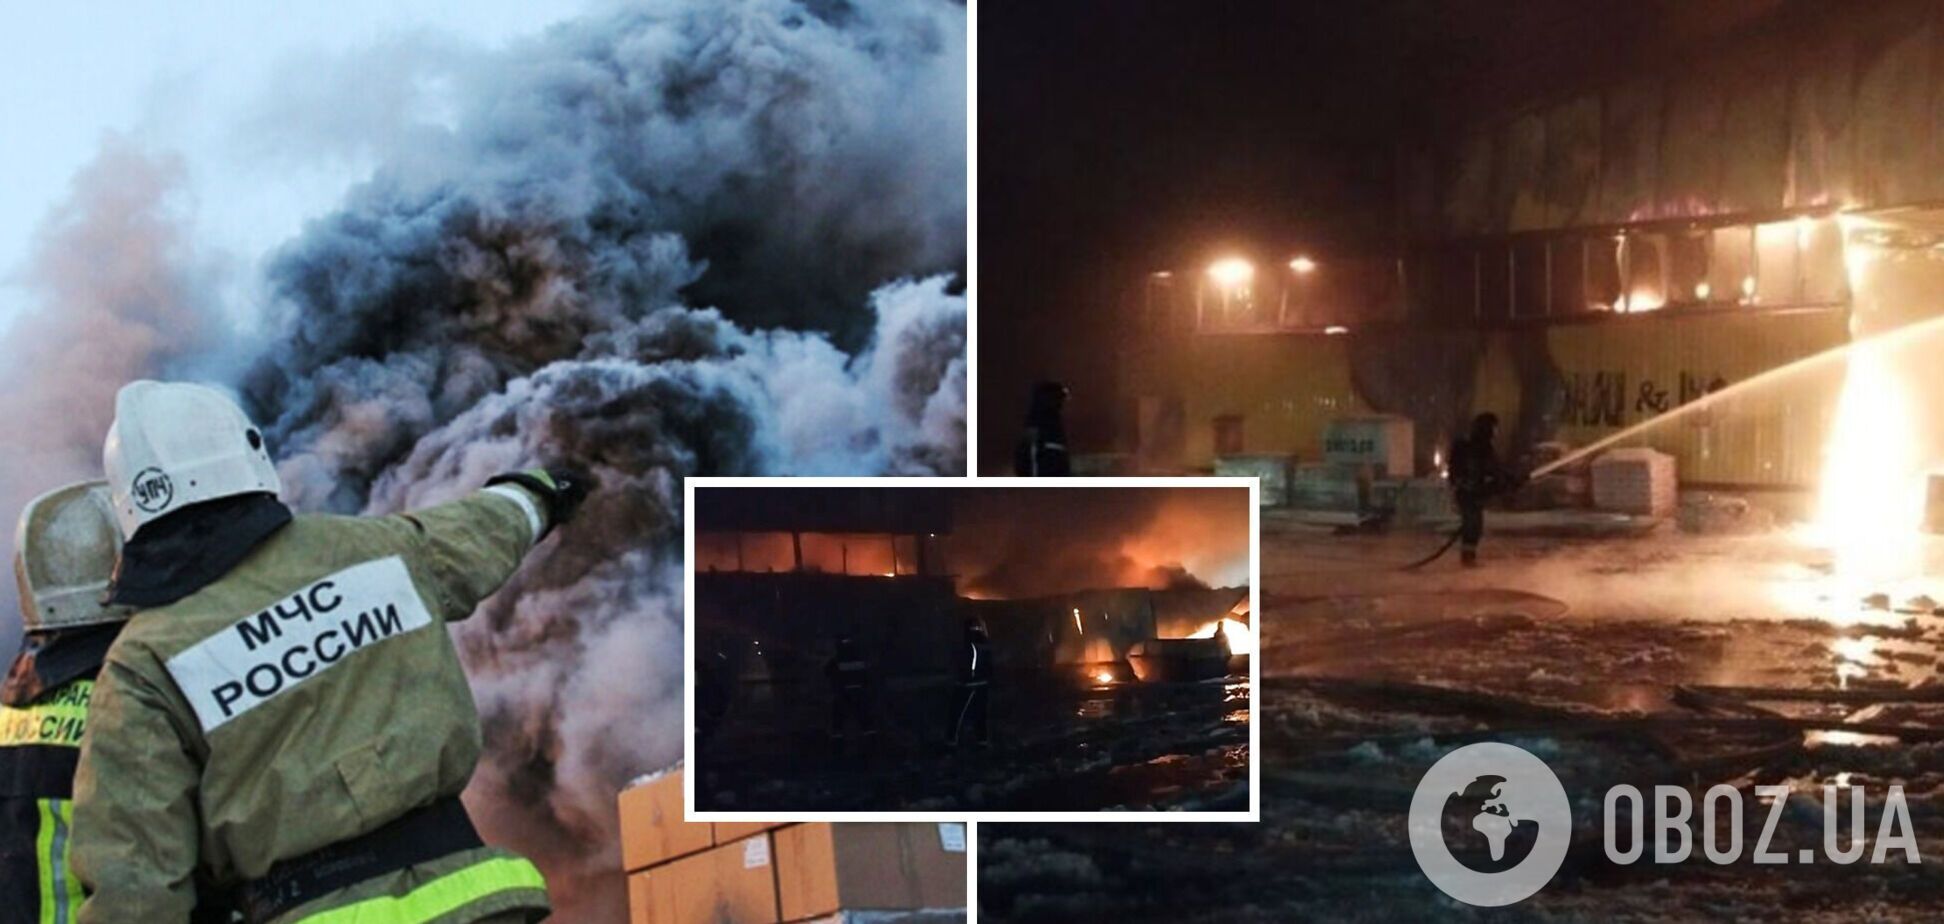 'Что-то взрывается и горит': в Подмосковье произошел мощный пожар на складе, огонь охватил более 4000 кв. м. Видео